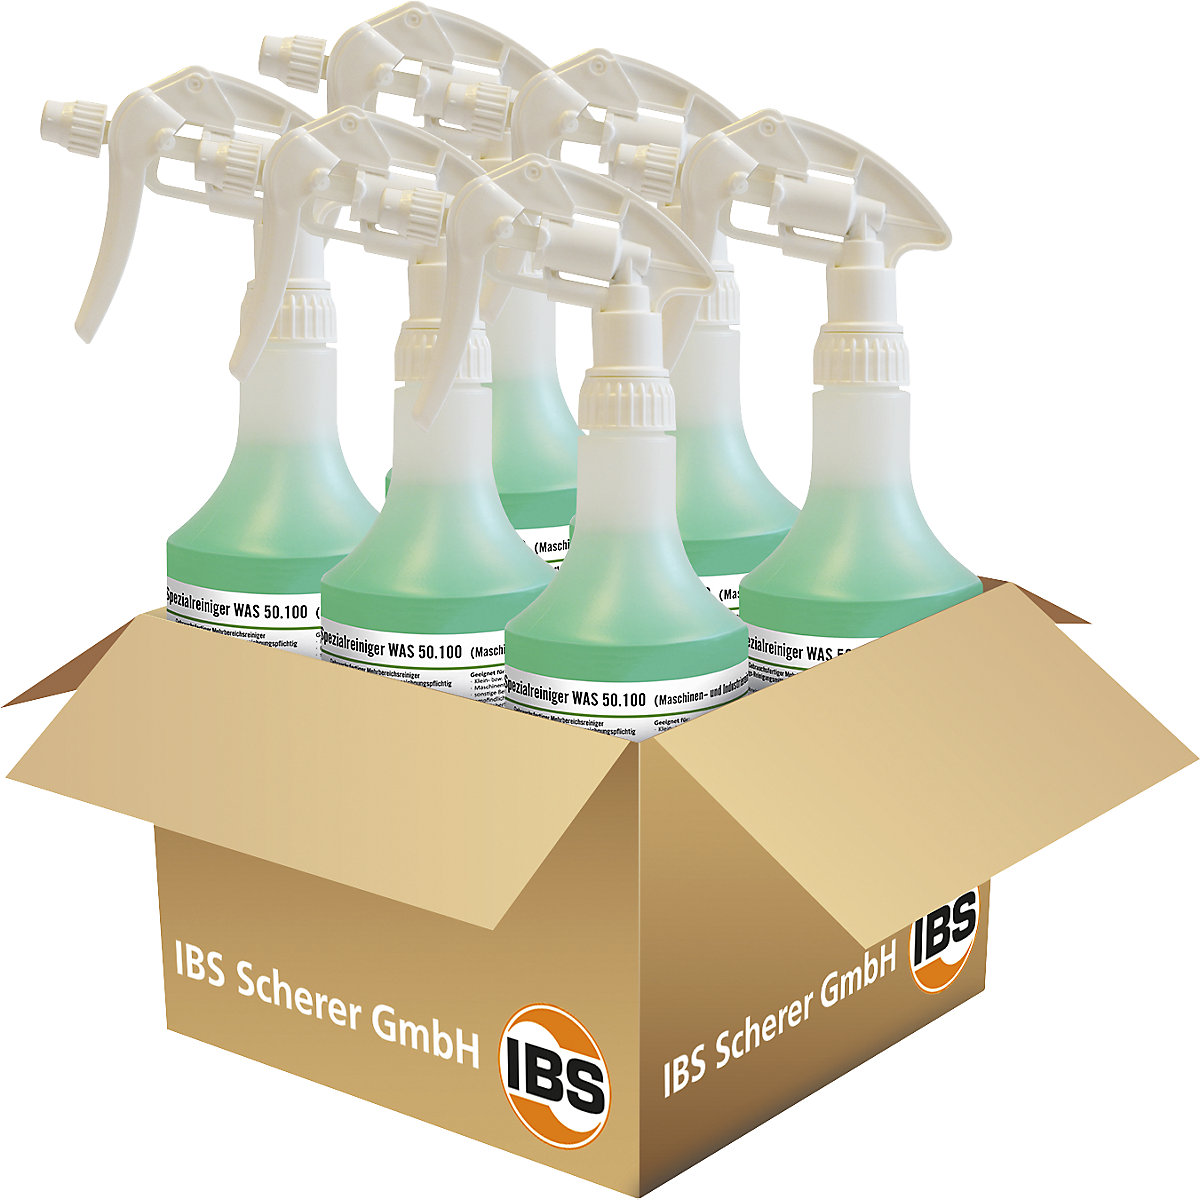 Detergente para máquinas/industrial WAS 50.100 - IBS Scherer